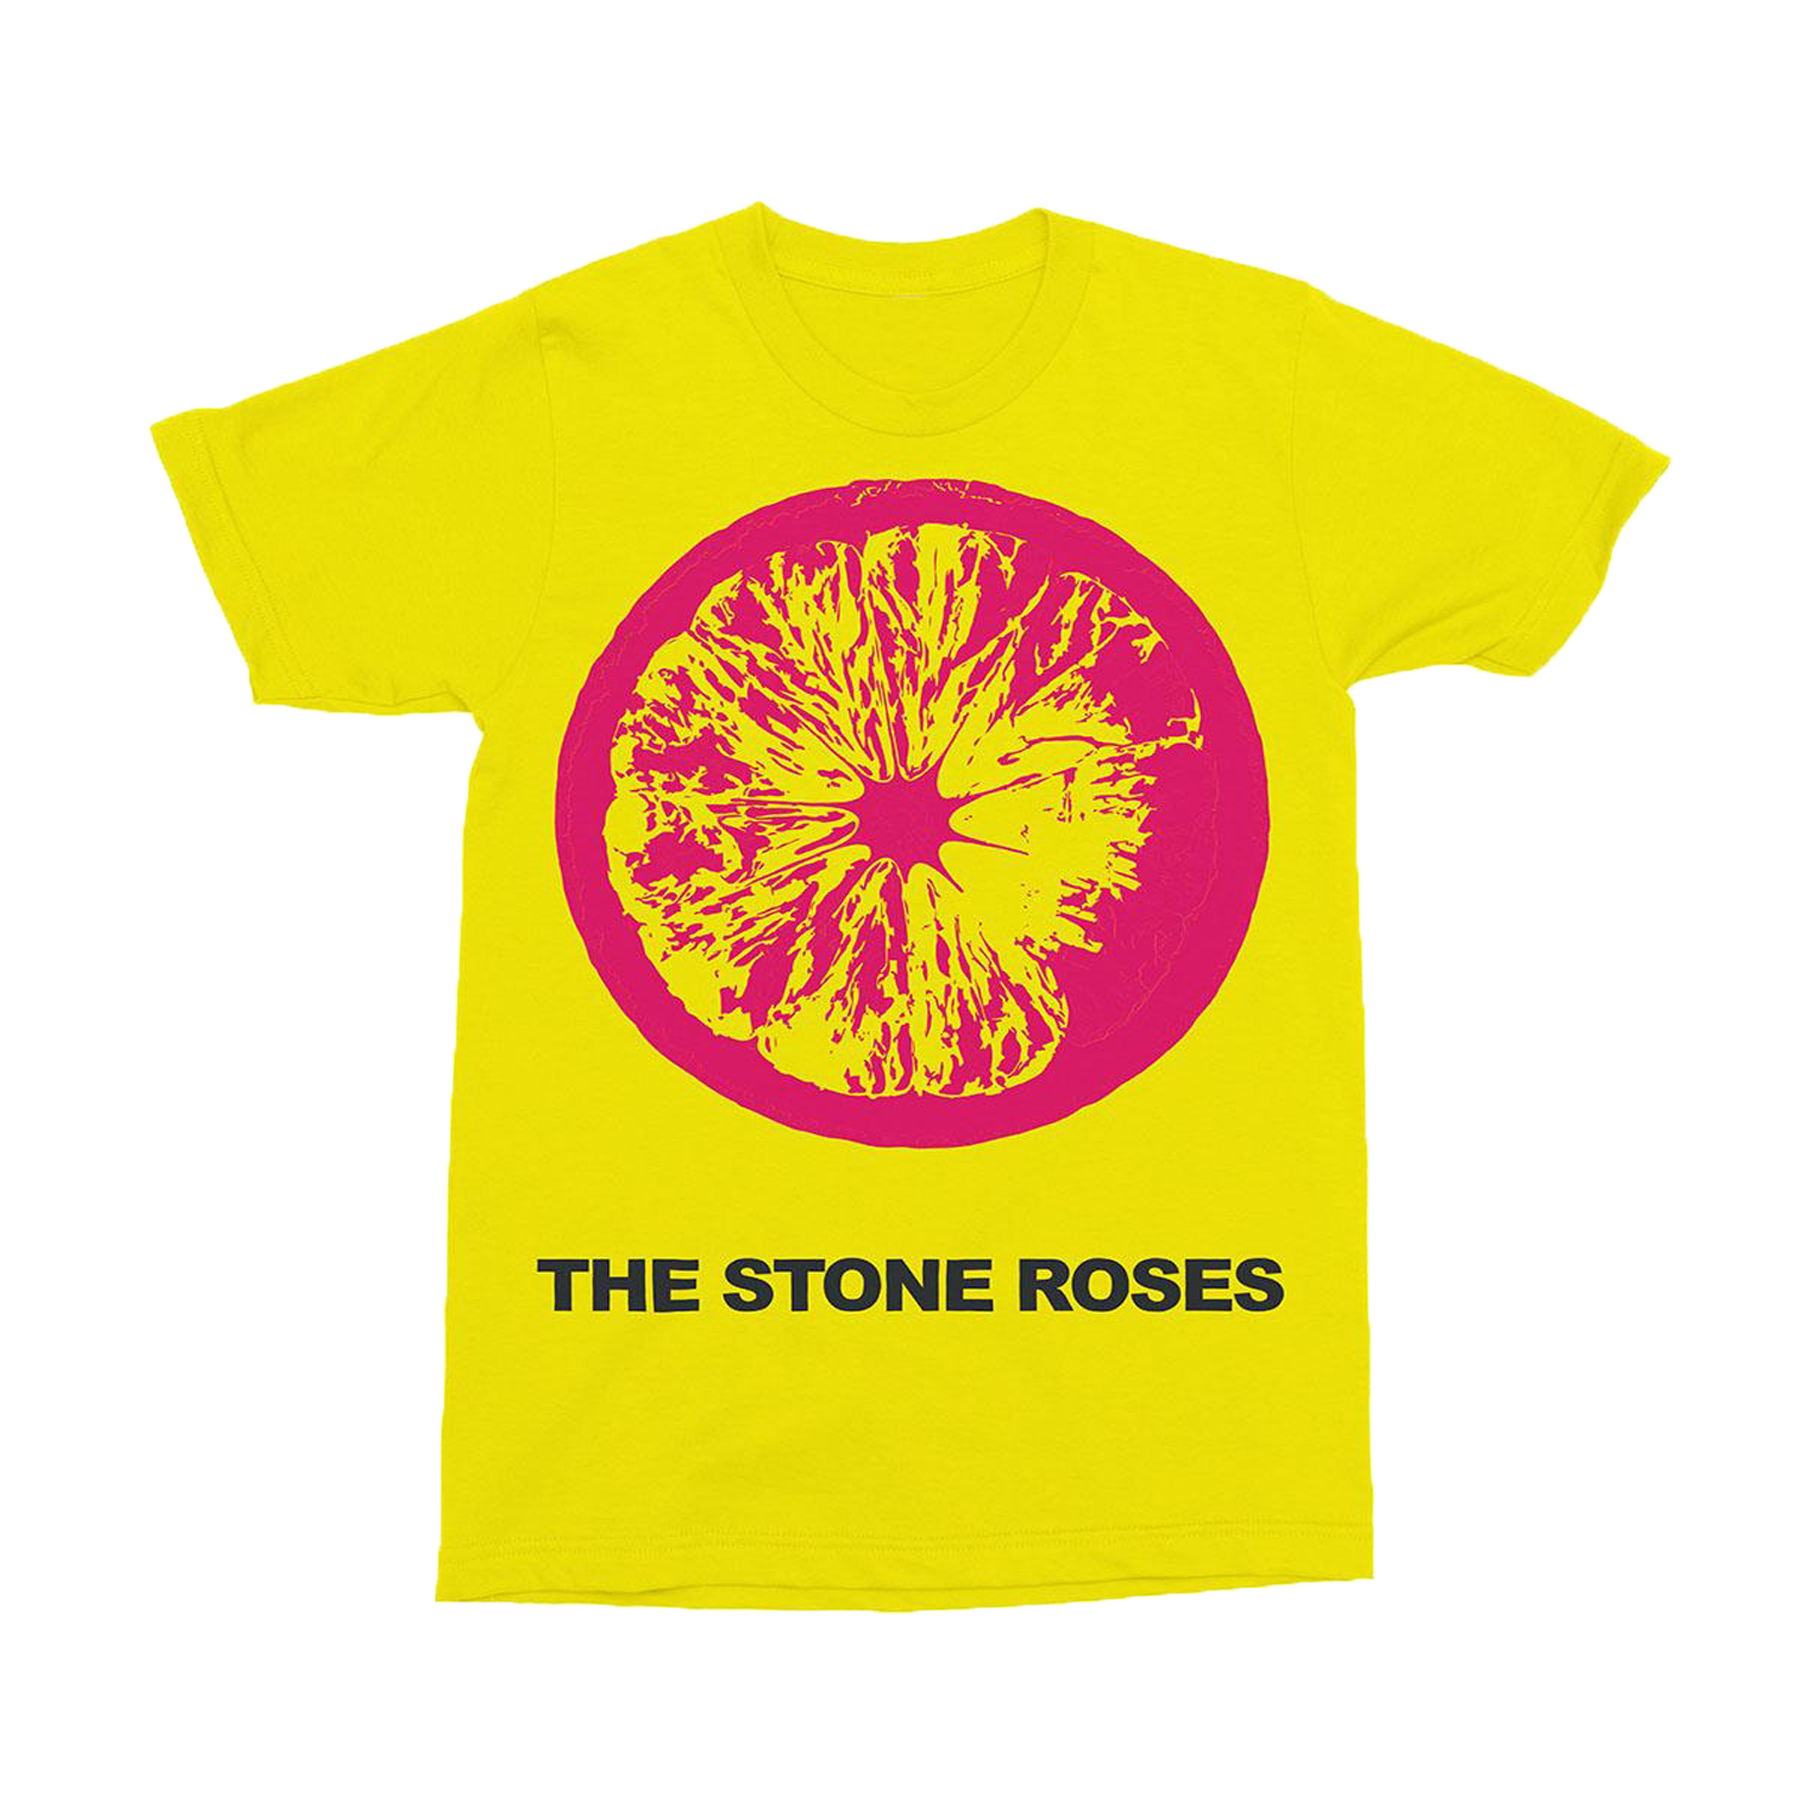 인쇄 된 노란색 티셔츠 PNG 사진